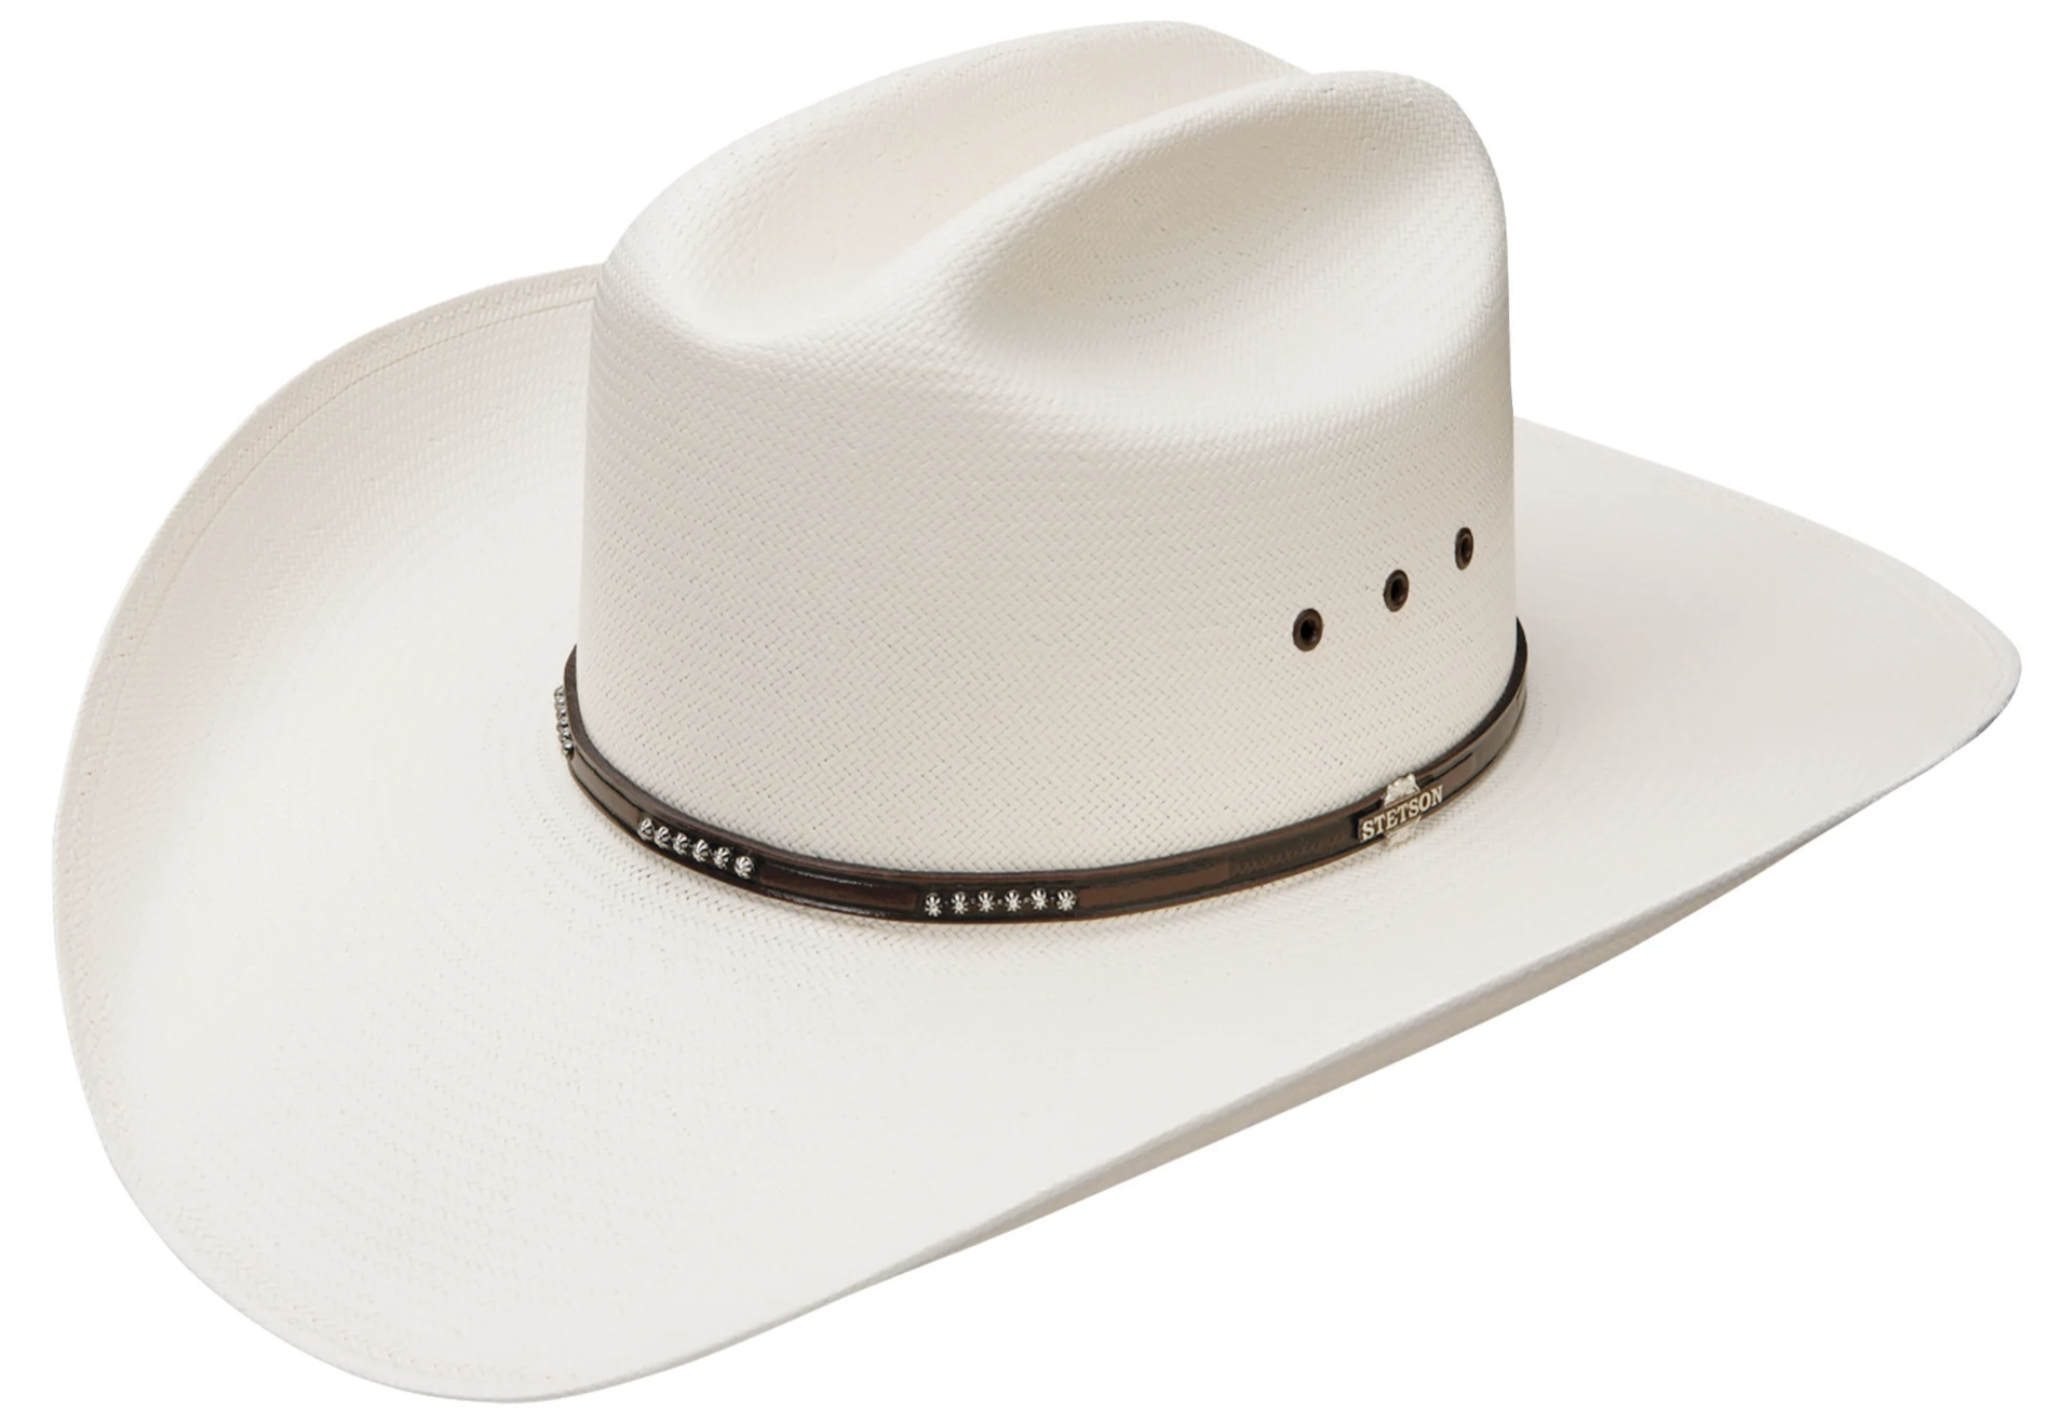 Stetson Llano Shantung Straw Cowboy Hat